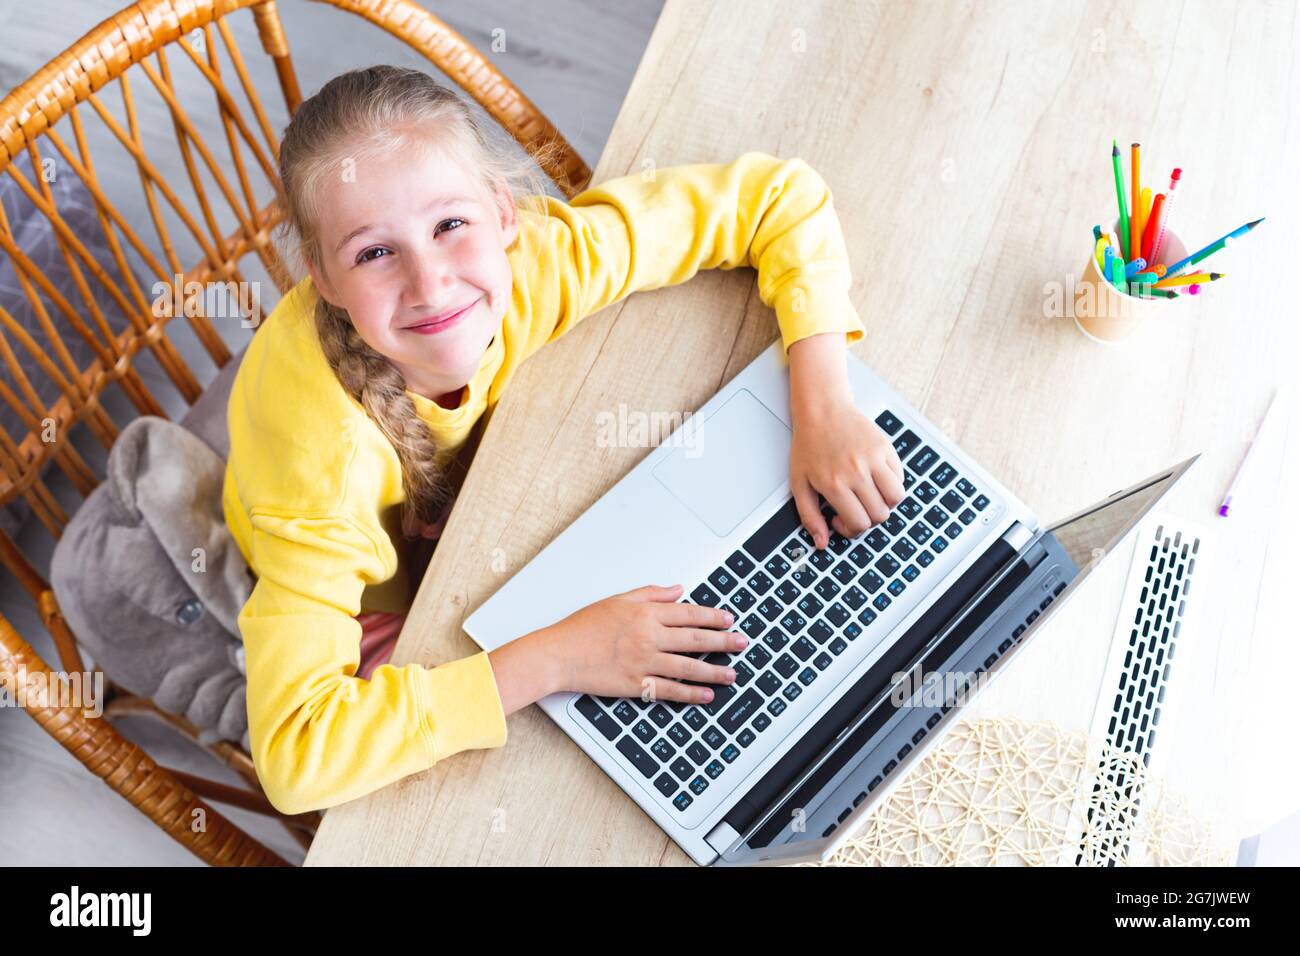 Caucasien belle fille de 10-11 ans s'assoit dans une chaise en osier à un bureau en bois clair, les mains sur le clavier d'ordinateur portable, regardant la caméra, sourires Banque D'Images